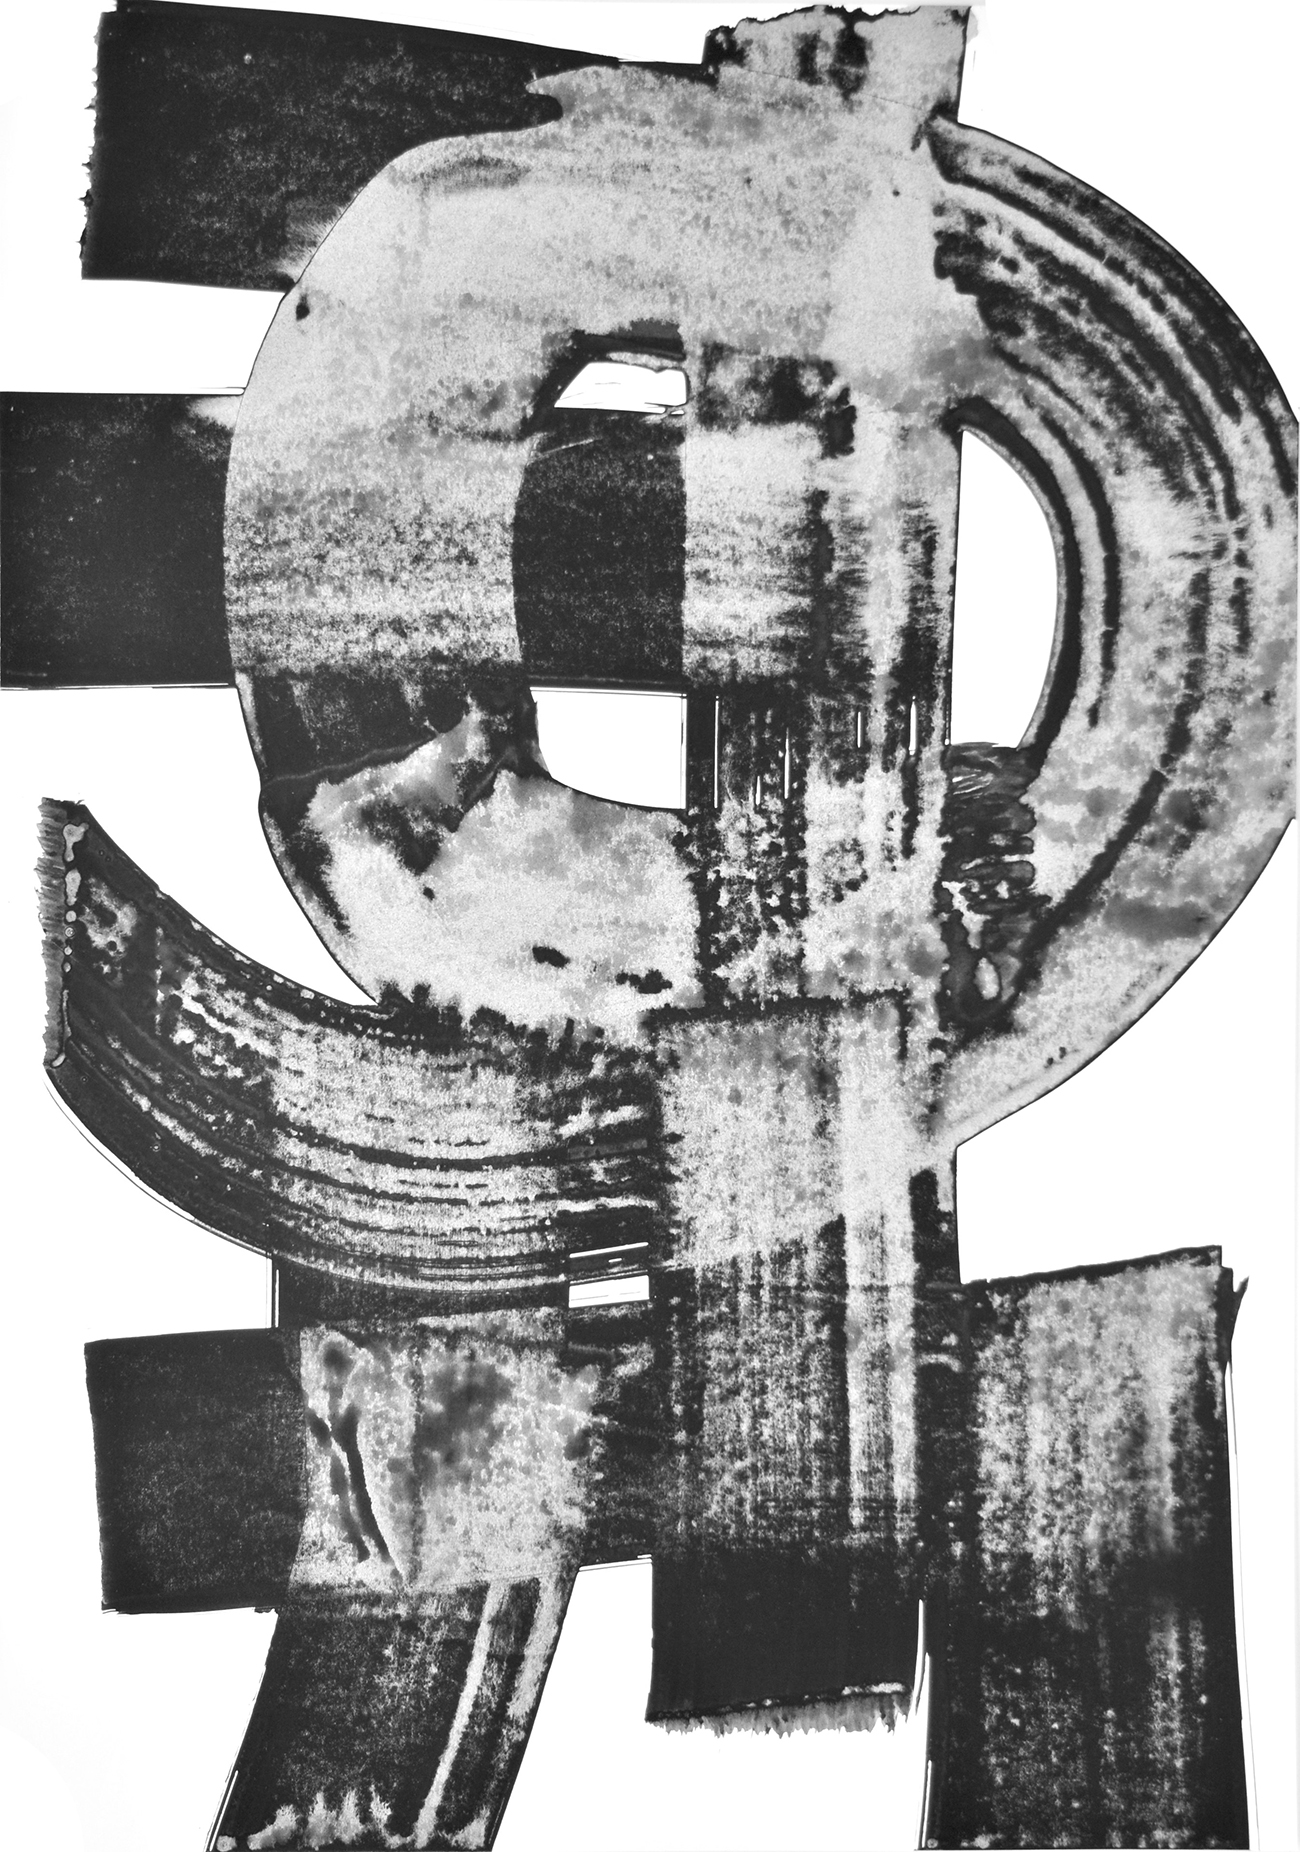 Luigi Pericle, Ohne Titel (Matri Dei d.d.d.), 1964, Museo d’arte della Svizzera italiana, Lugano

